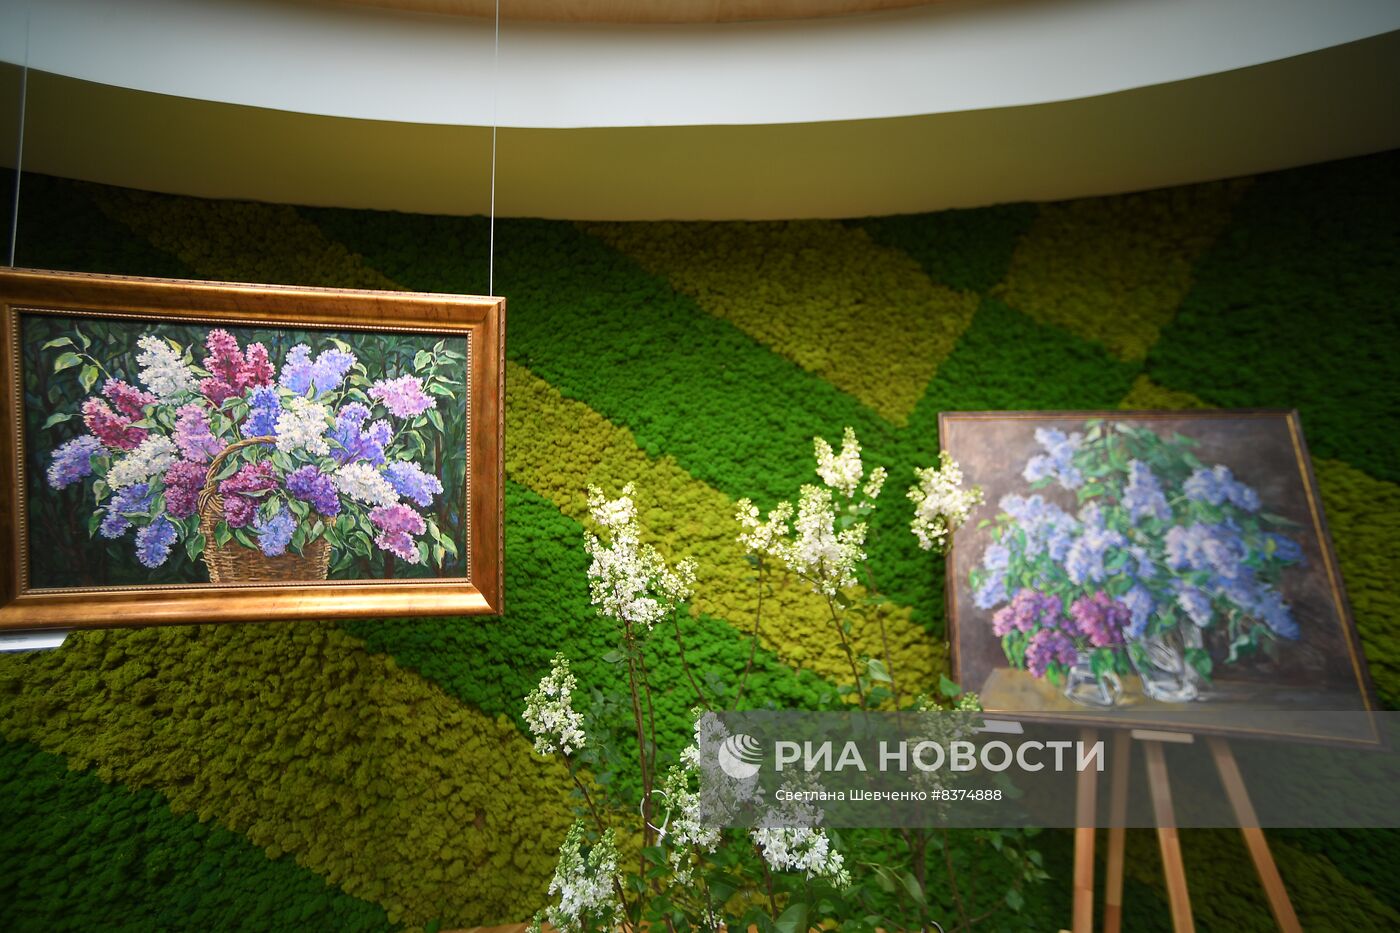 Выставка "Сиреневый сад" на ВДНХ